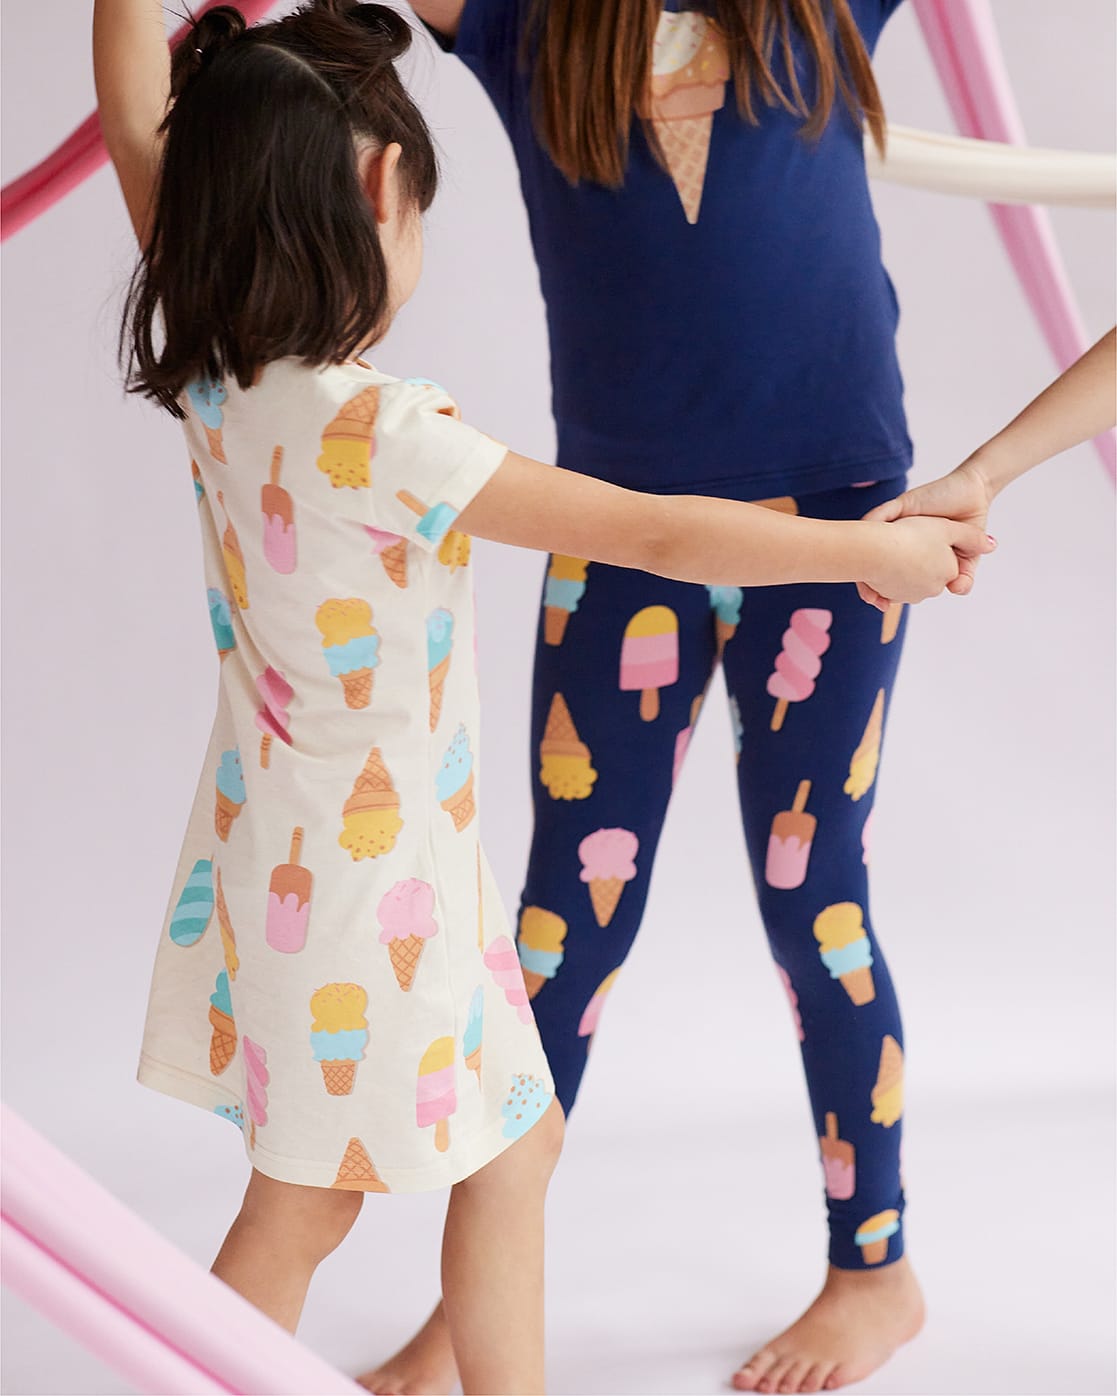 Dve devojčice se vrte u krug, u beloj spavaćici sa motivom sladoleda i plavoj pidžami sa motivom sladoleda